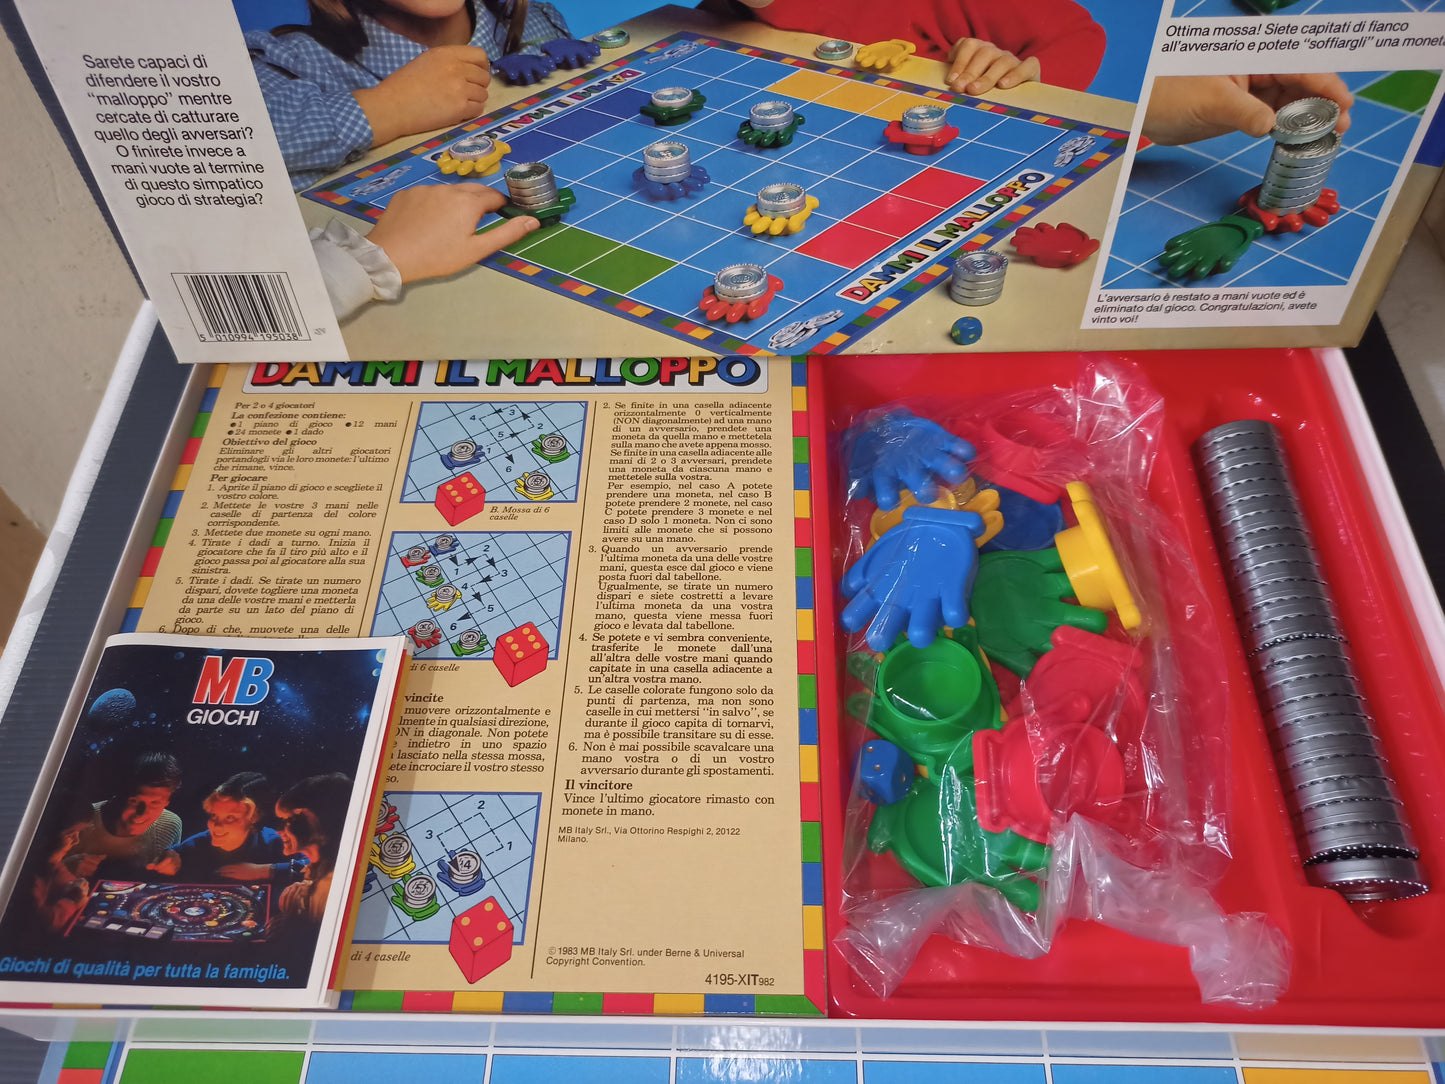 Dammi Il Malloppo board game by MB, original from the 80s